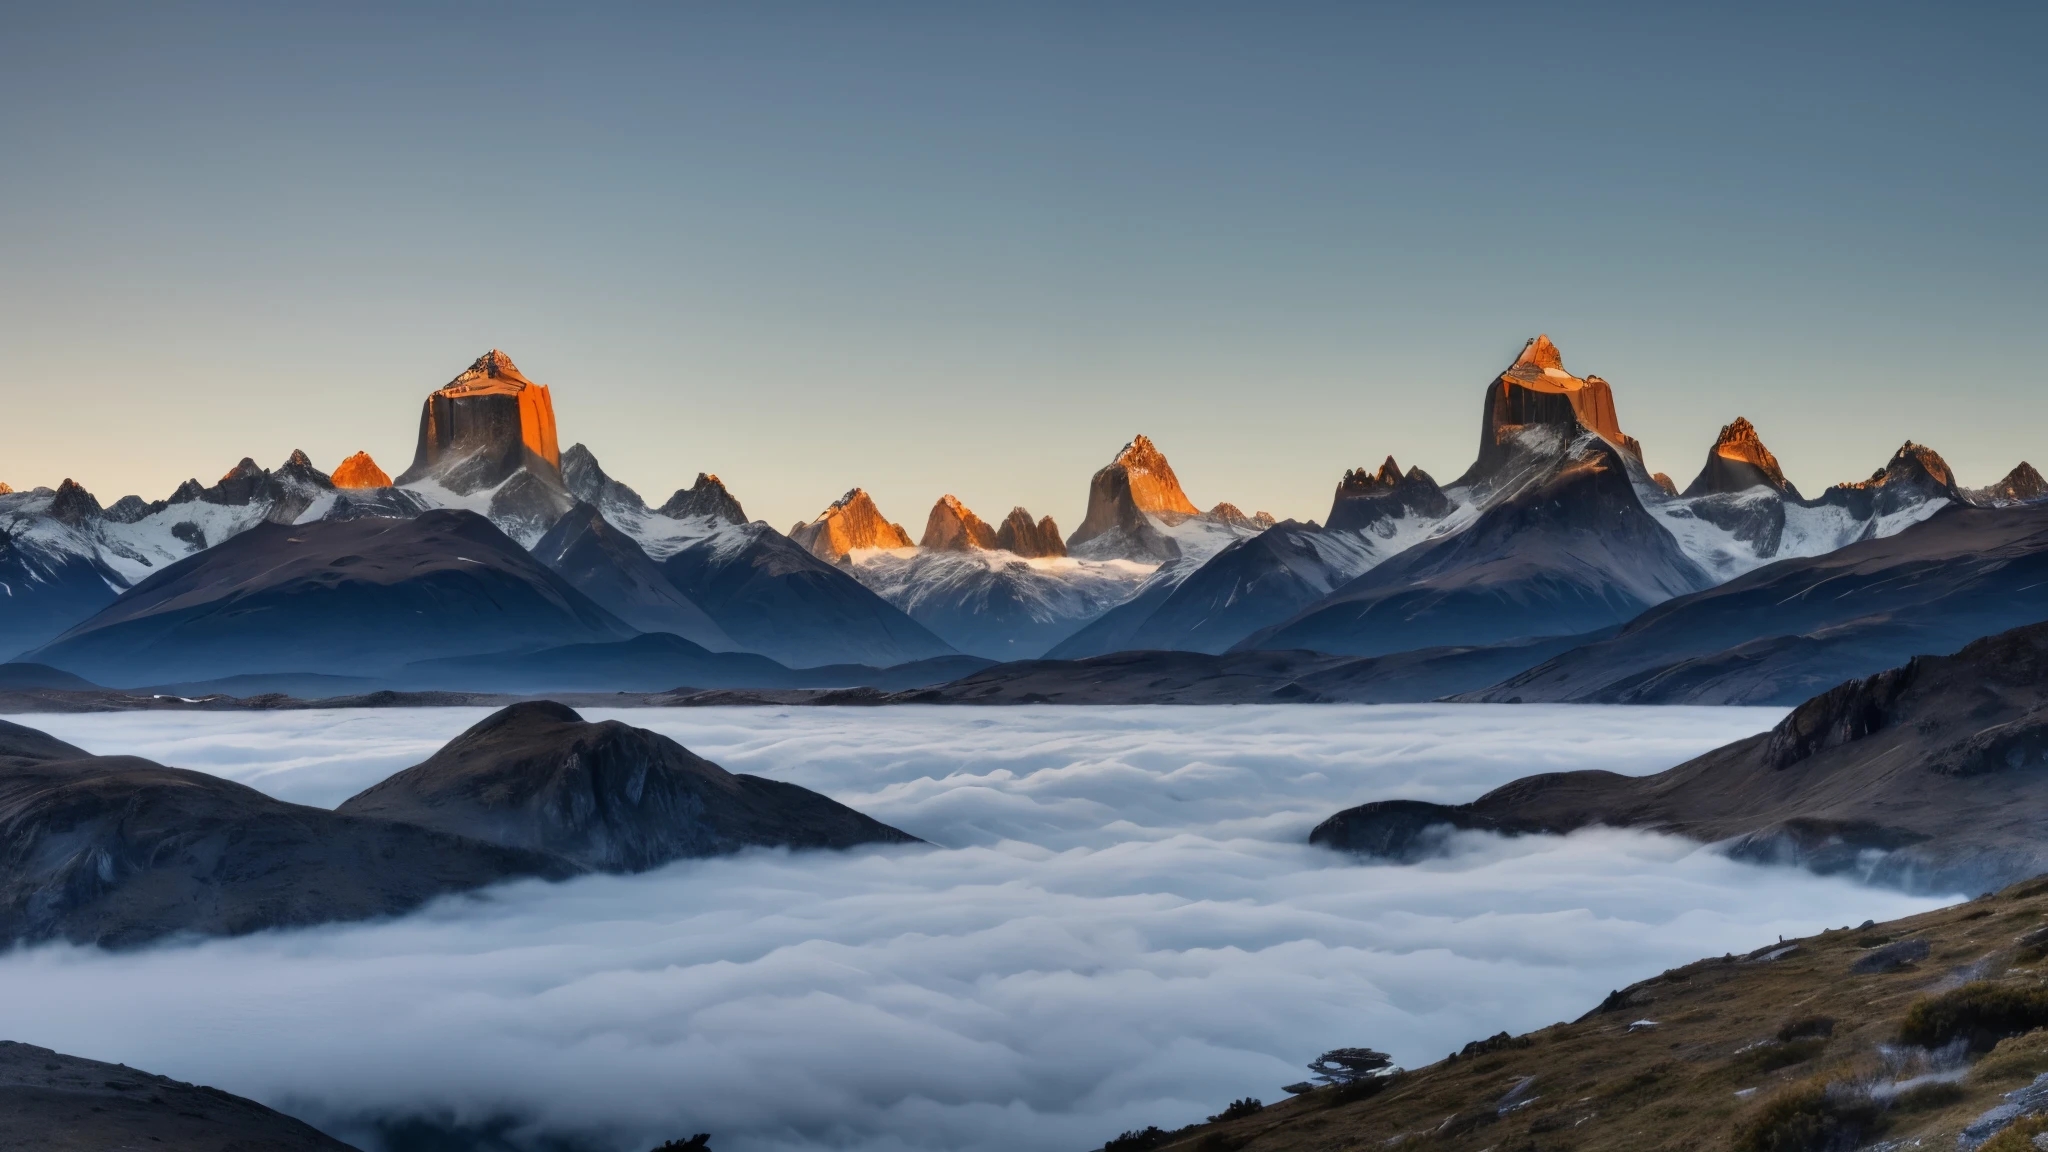 Uma vista deslumbrante dos picos das montanhas escarpadas da Patagônia, suas torres de granito cobertas de neve perfurando um mar de nuvens etéreas ao amanhecer.